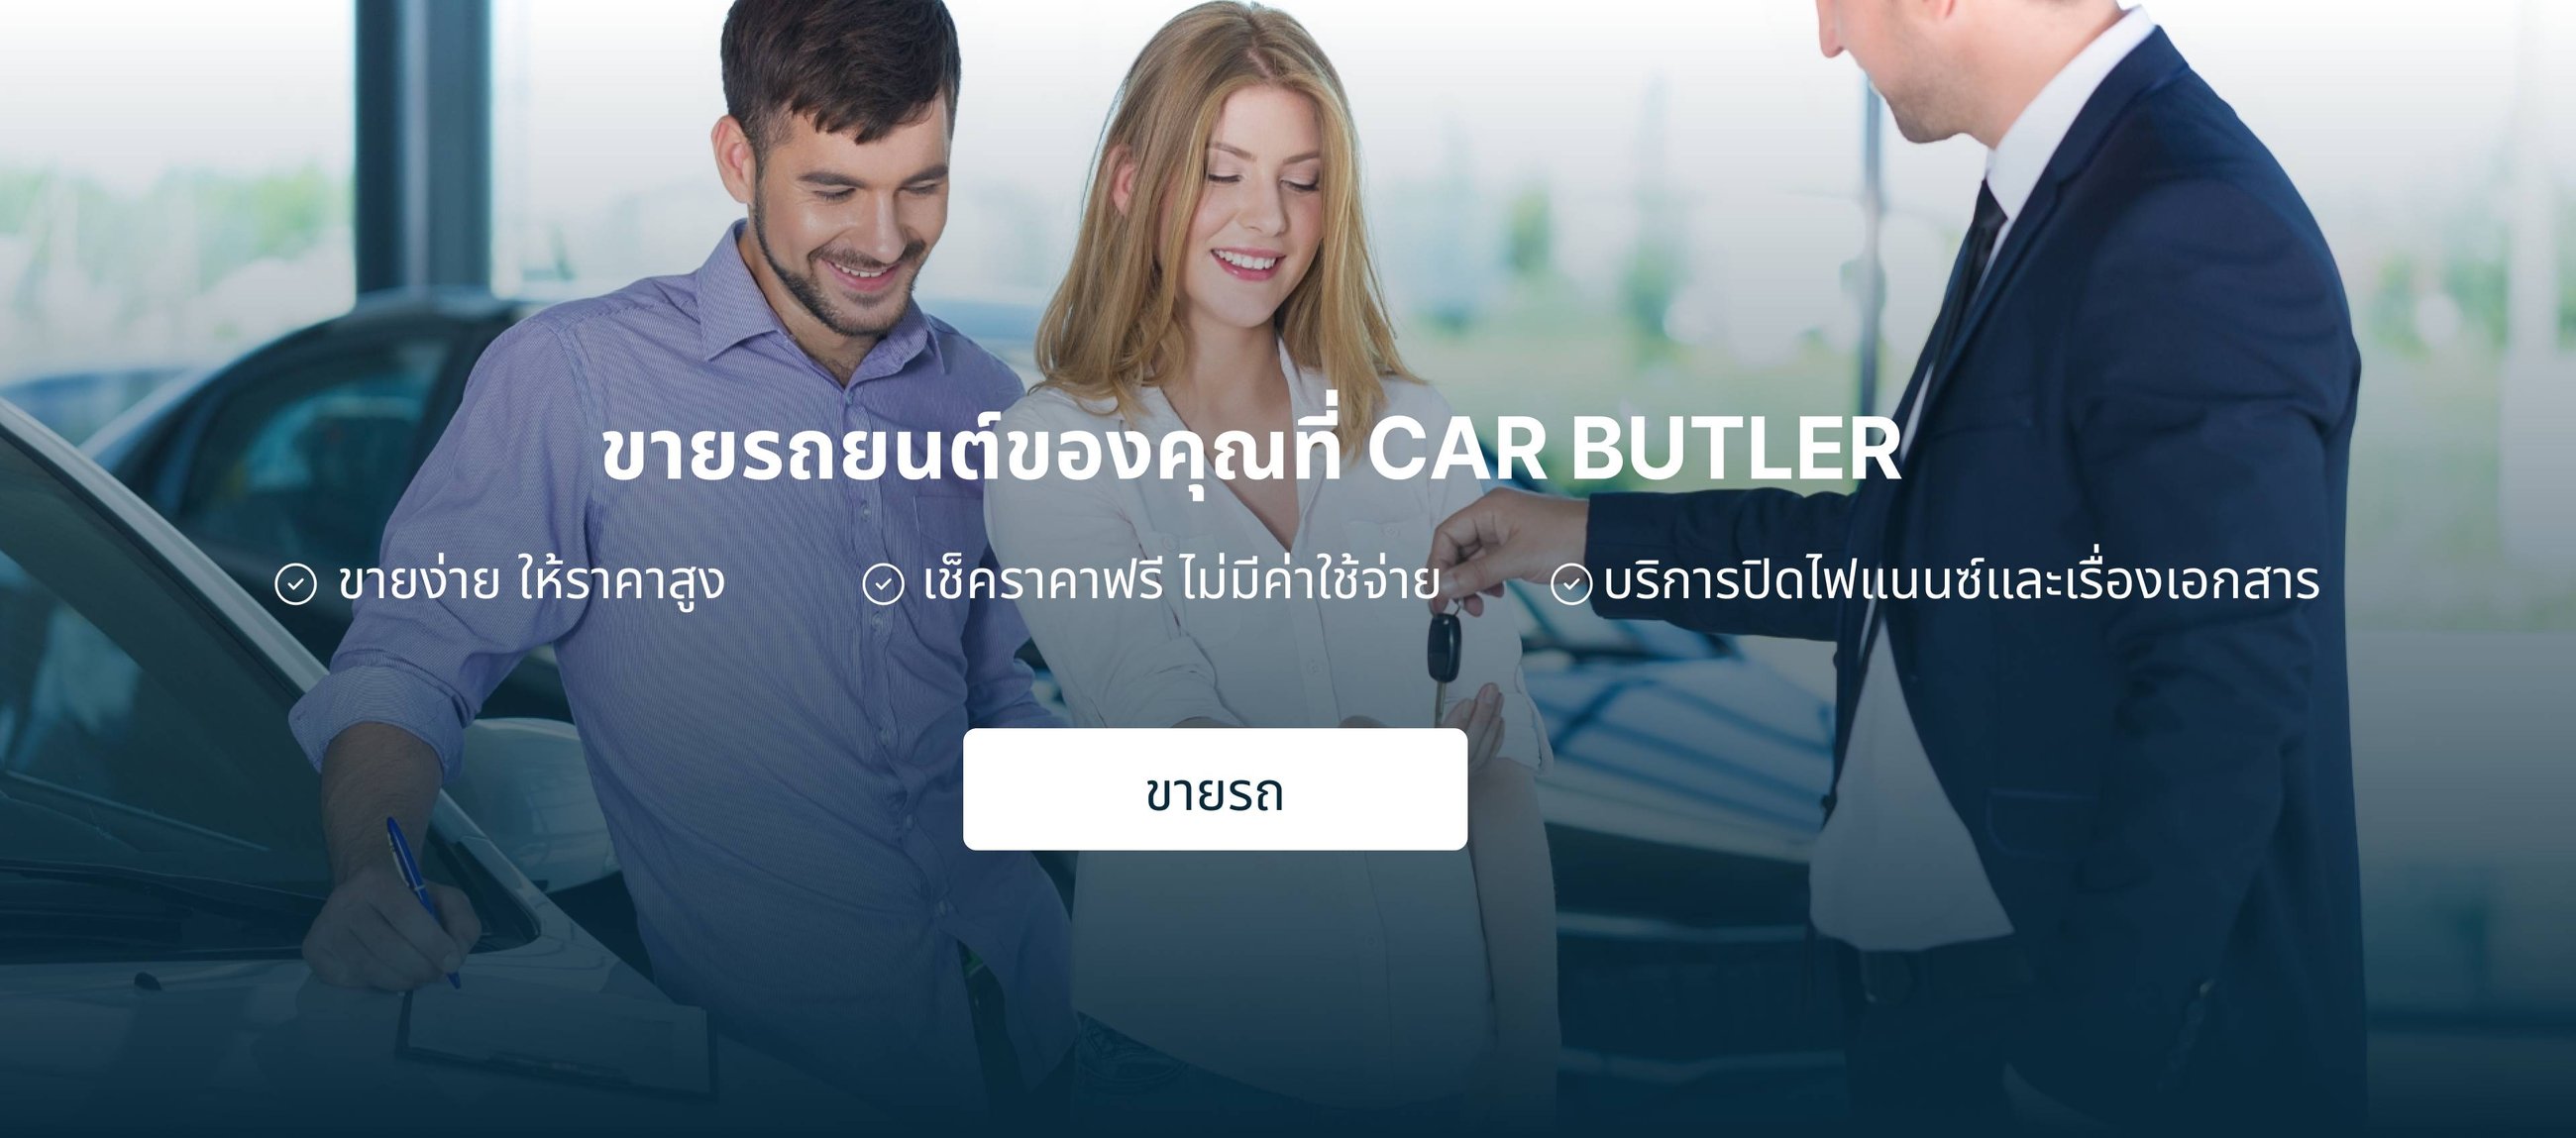 ติดต่อขายรถ กับ Car Butler